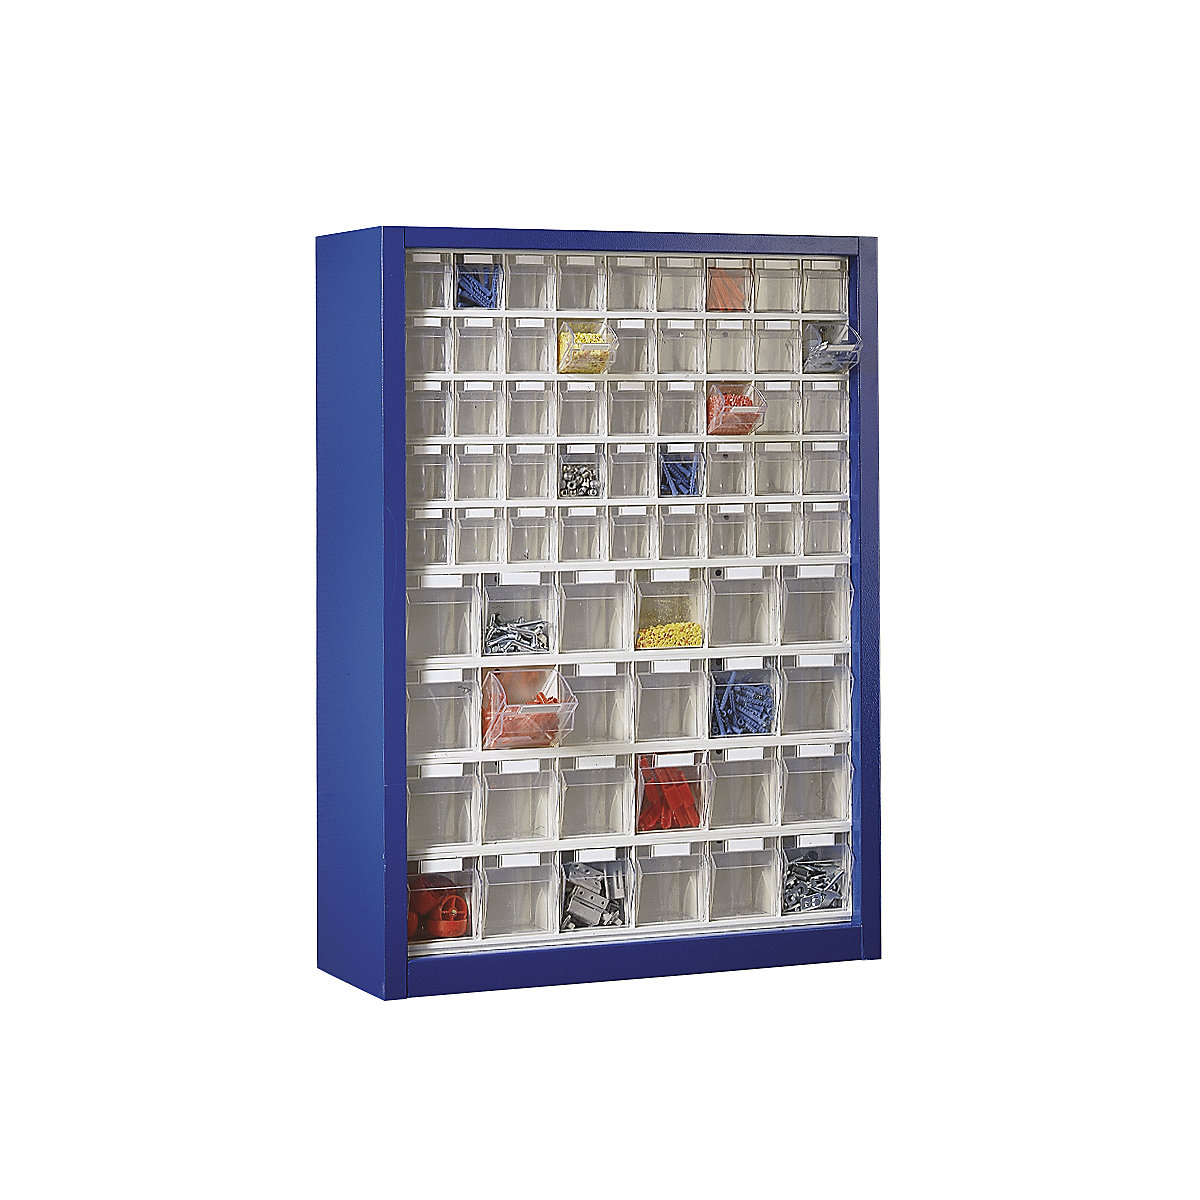 Závěsná skříň s výklopnými nádobami, v x š x h 910 x 665 x 250 mm, s 69 přepravkami, barva tělesa hořcově modrá-2